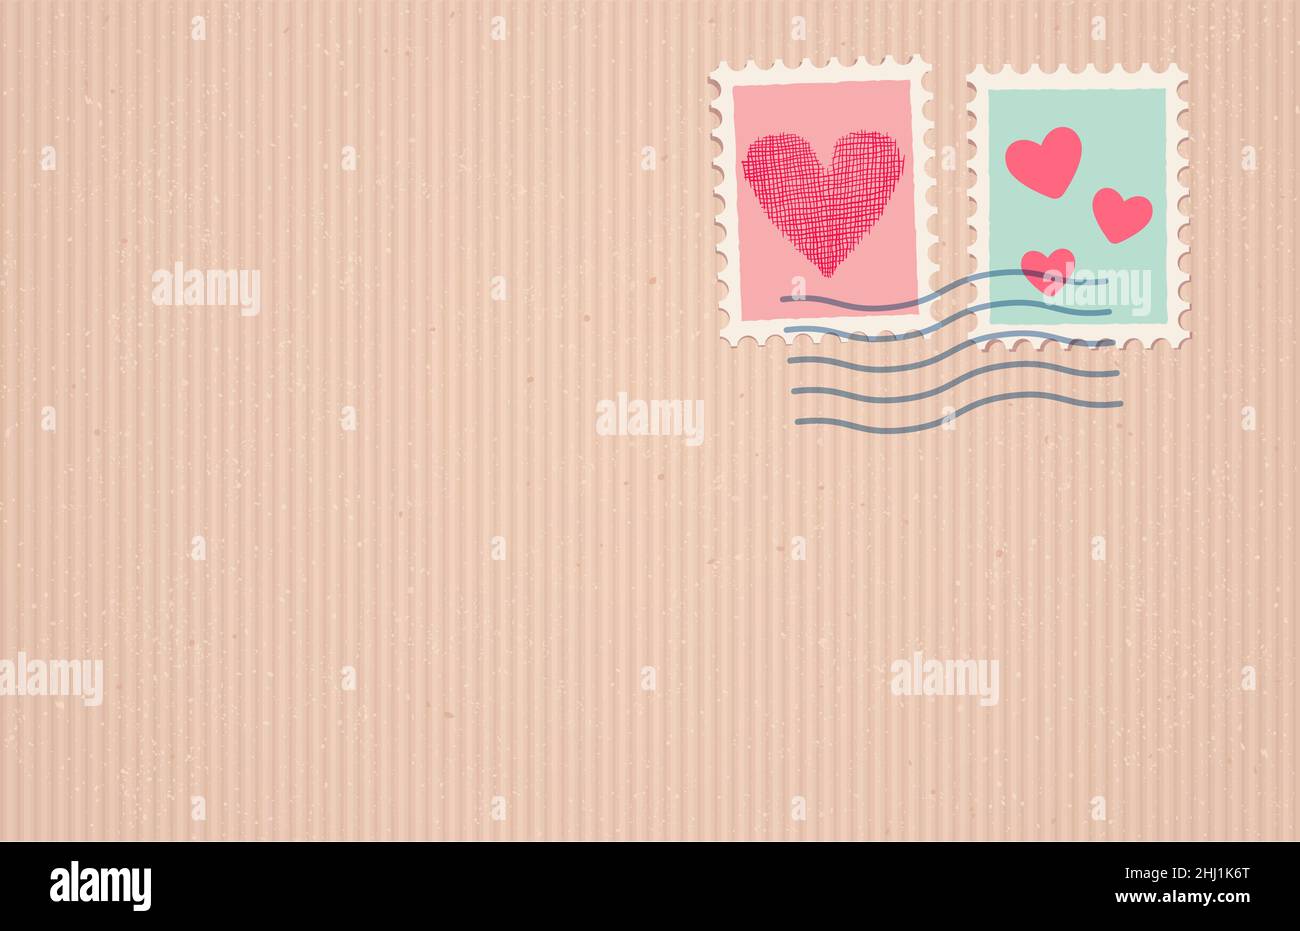 Illustrazione vettoriale di una vecchia carta artigianale con timbro postale in stile vintage per il giorno di San Valentino. Retro timbro post su vecchia tessitura di cartone con cuori. Illustrazione Vettoriale